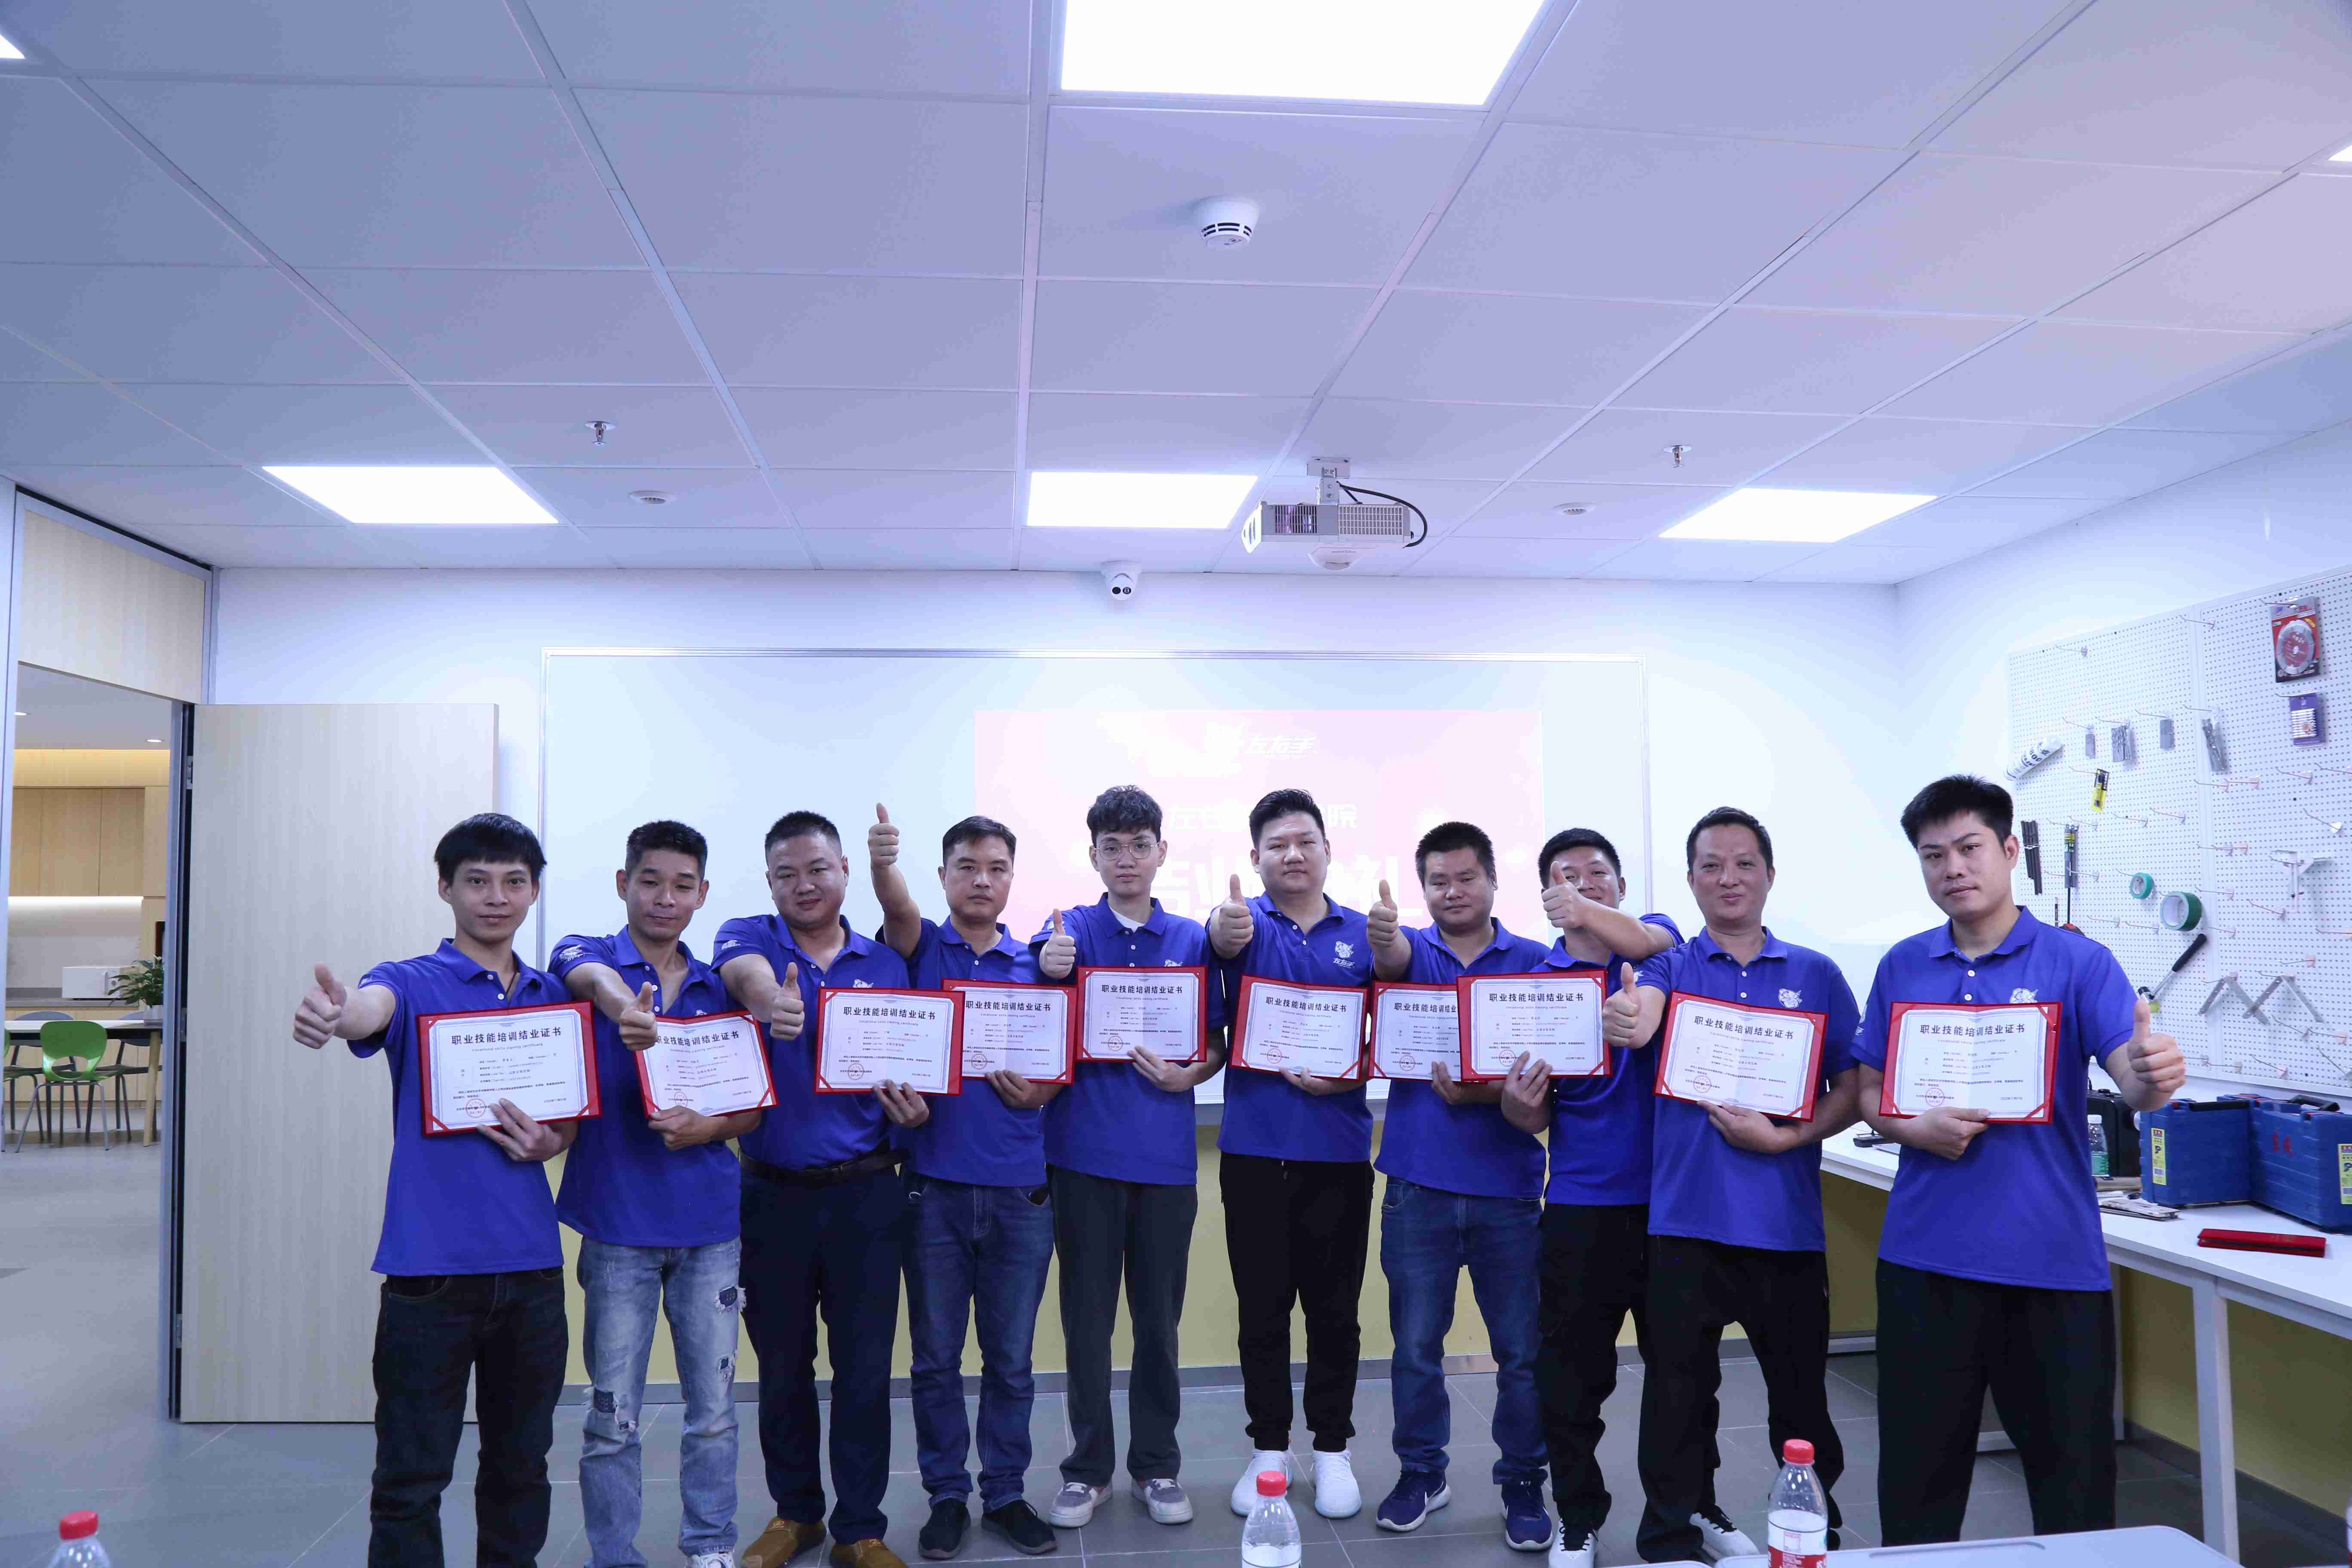 立博ladbrokes深圳商学院第一批毕业学员集体